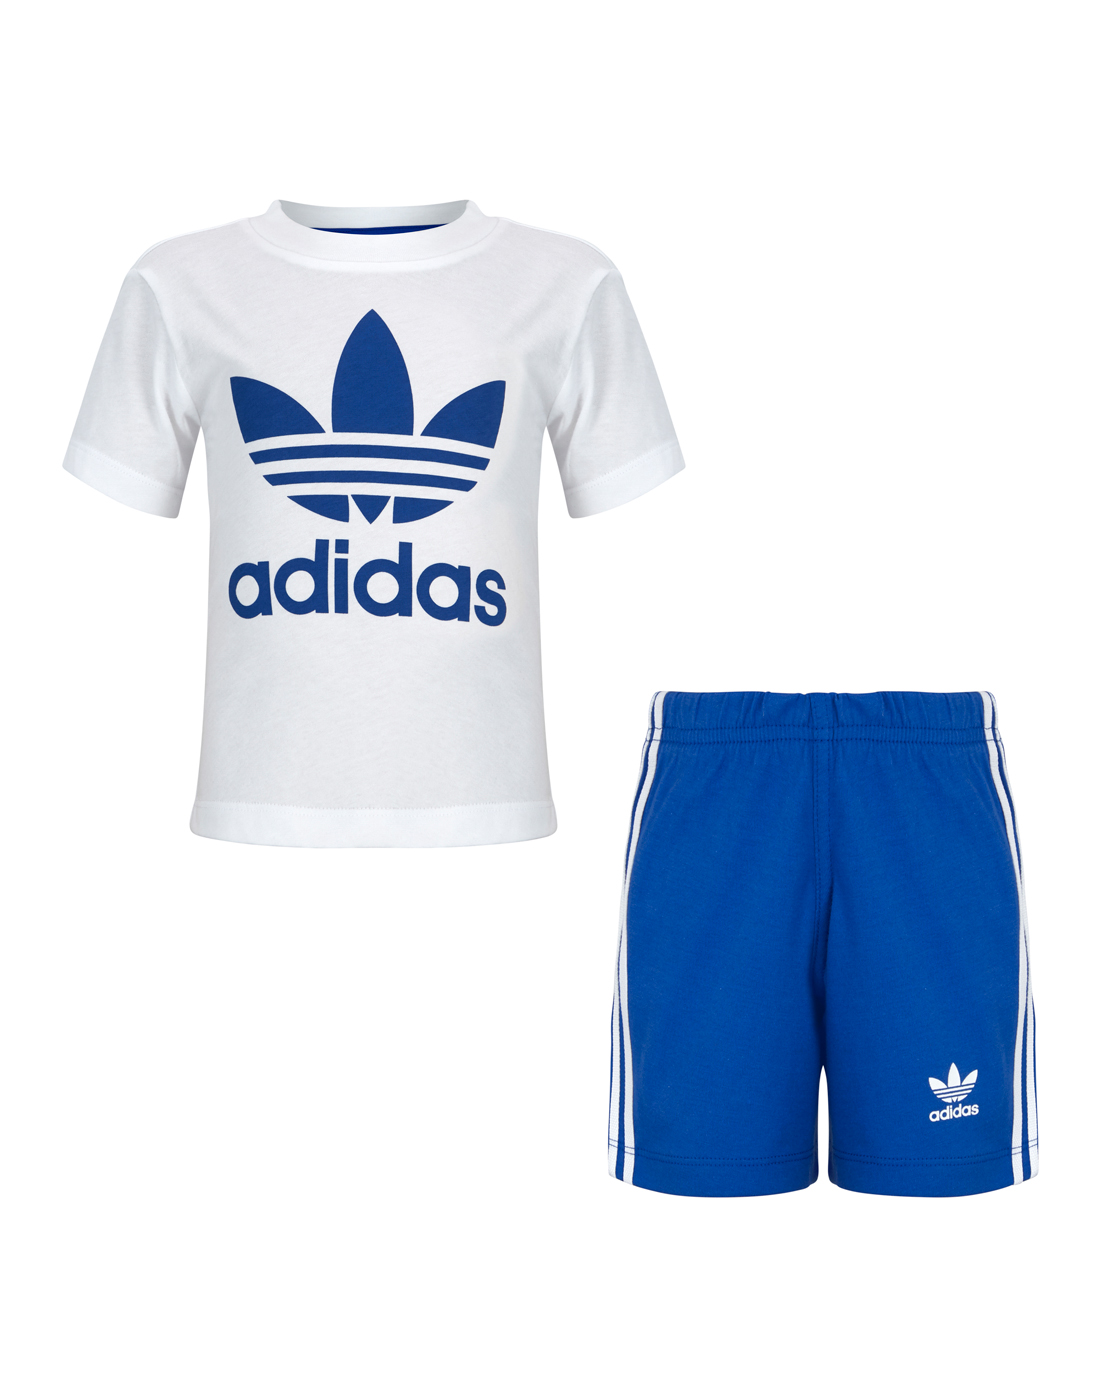 adidas Originals Infant Boys Summer Set - Blue | Life Style Sports UK